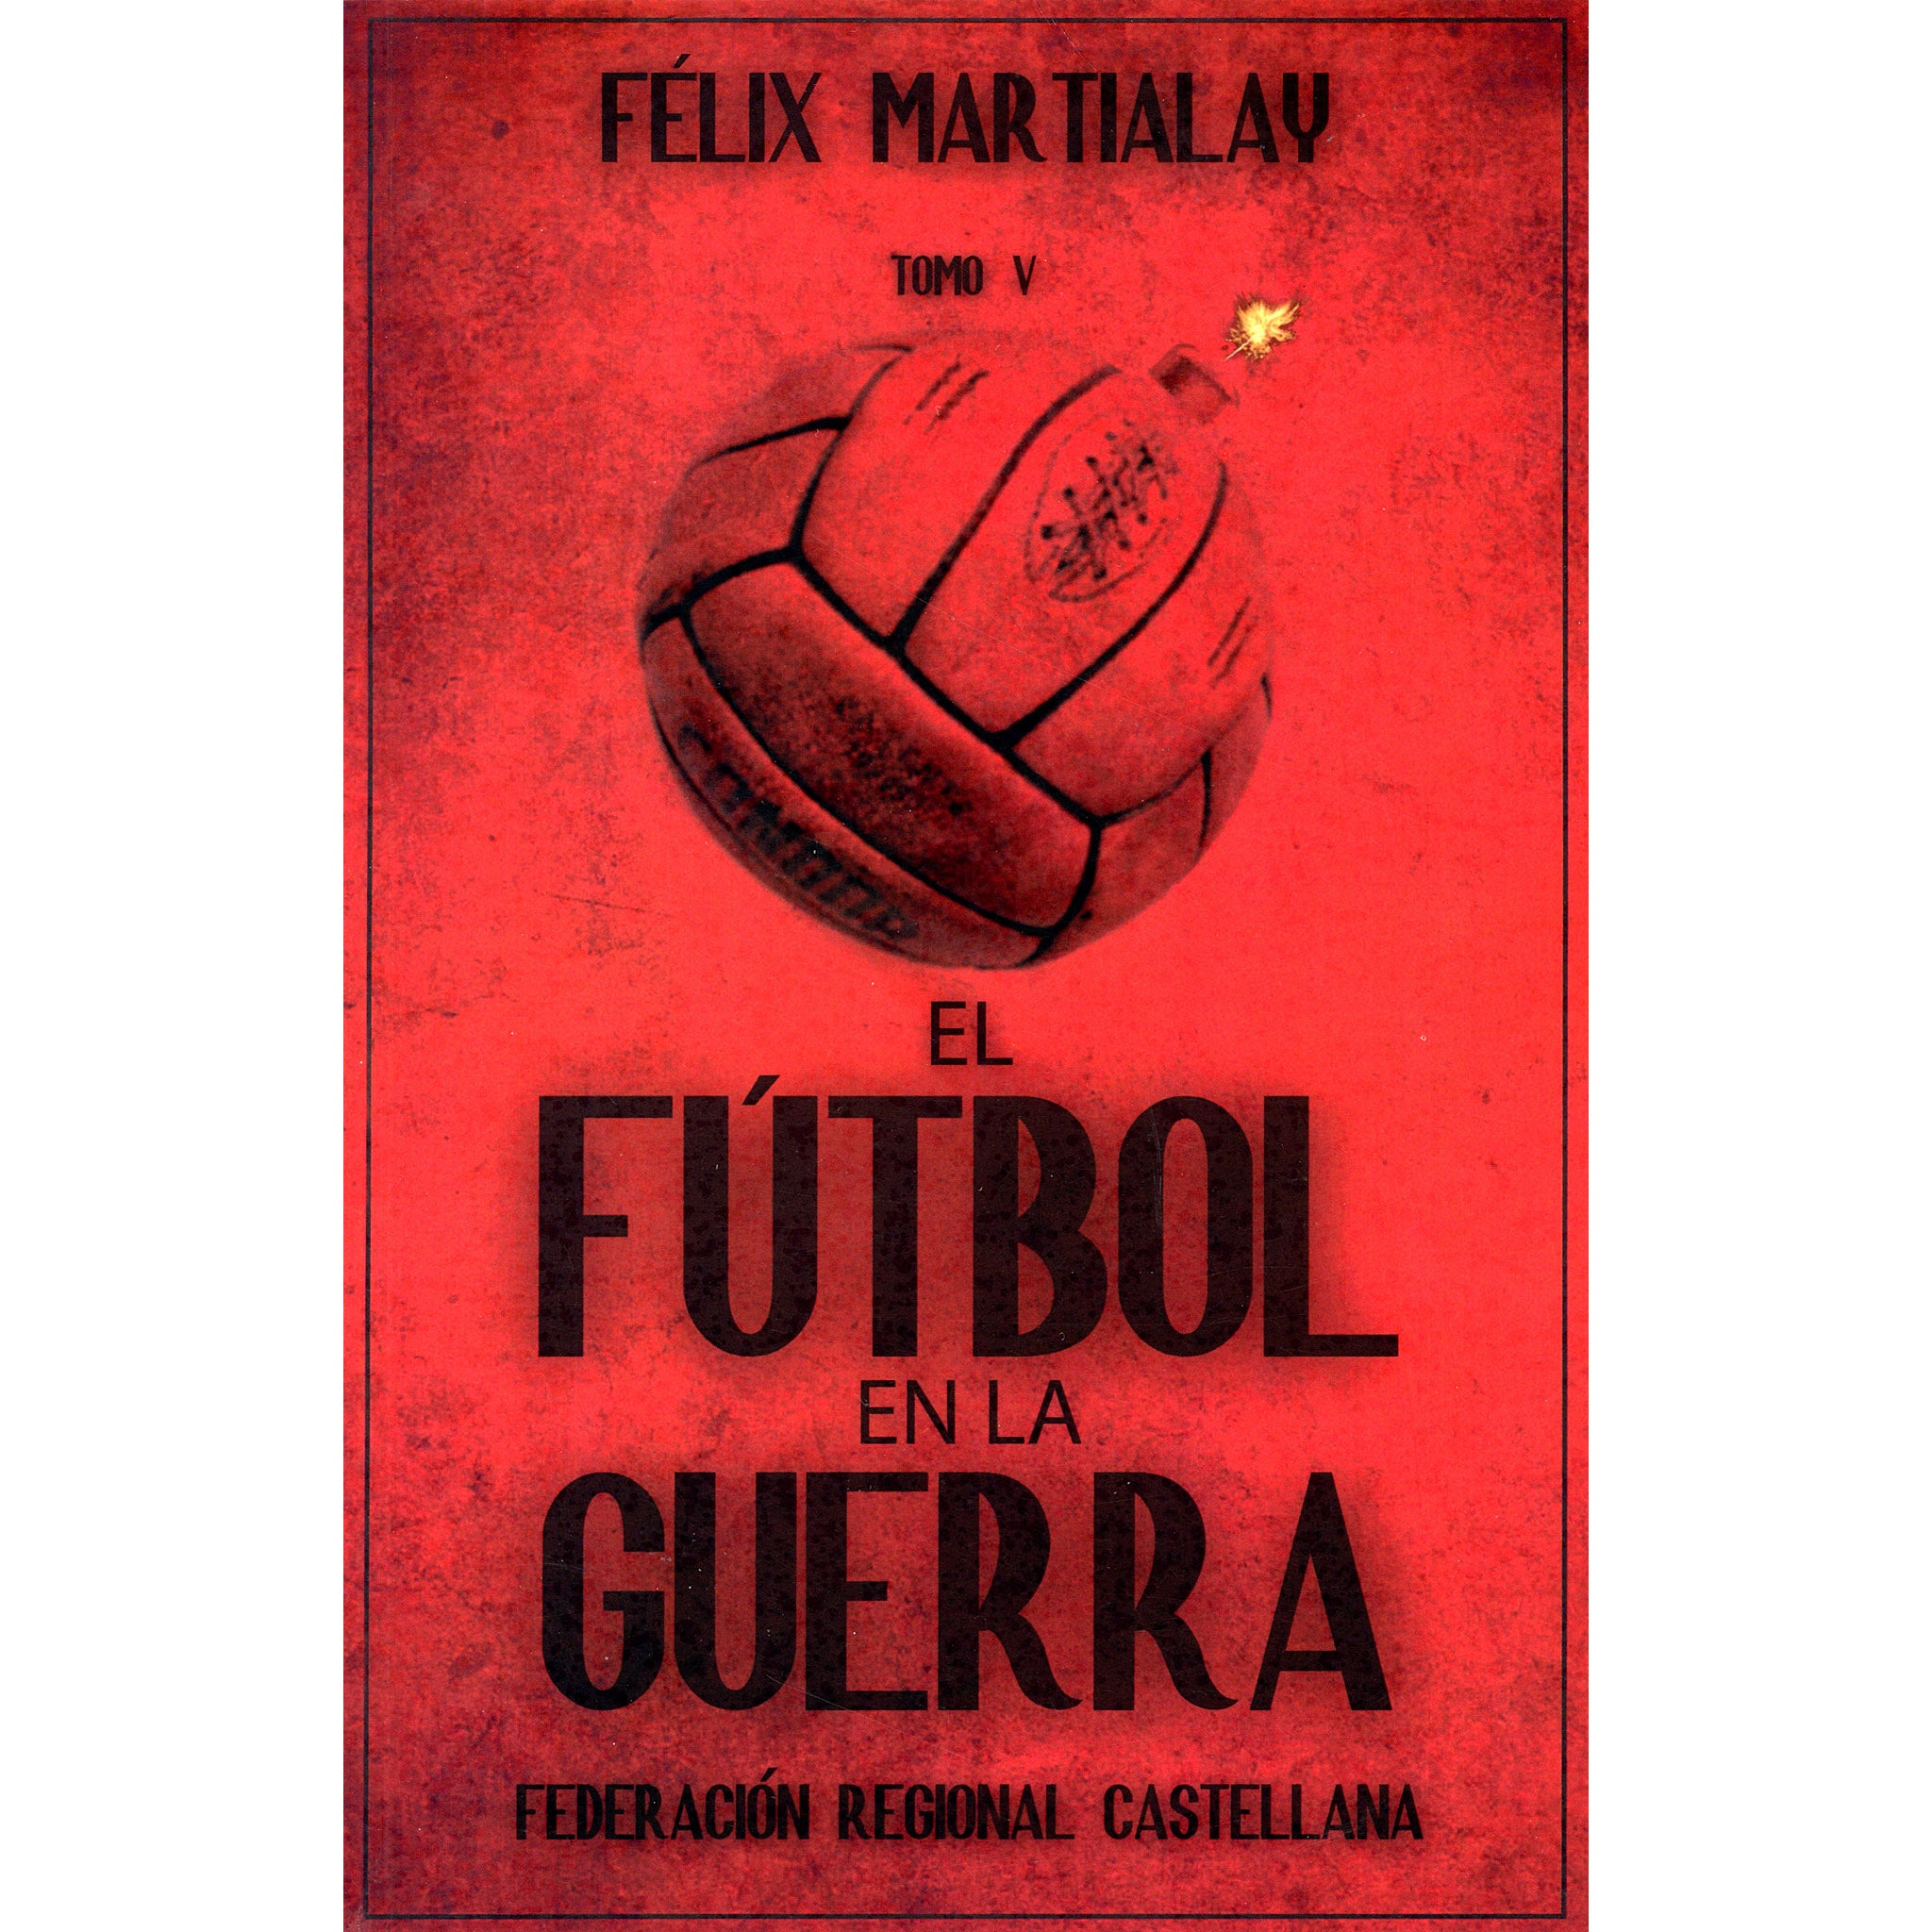 El Futbol en la Guerra Tomo V – Federacion Regional Castallana (Spanish Civil War History Volume 5)